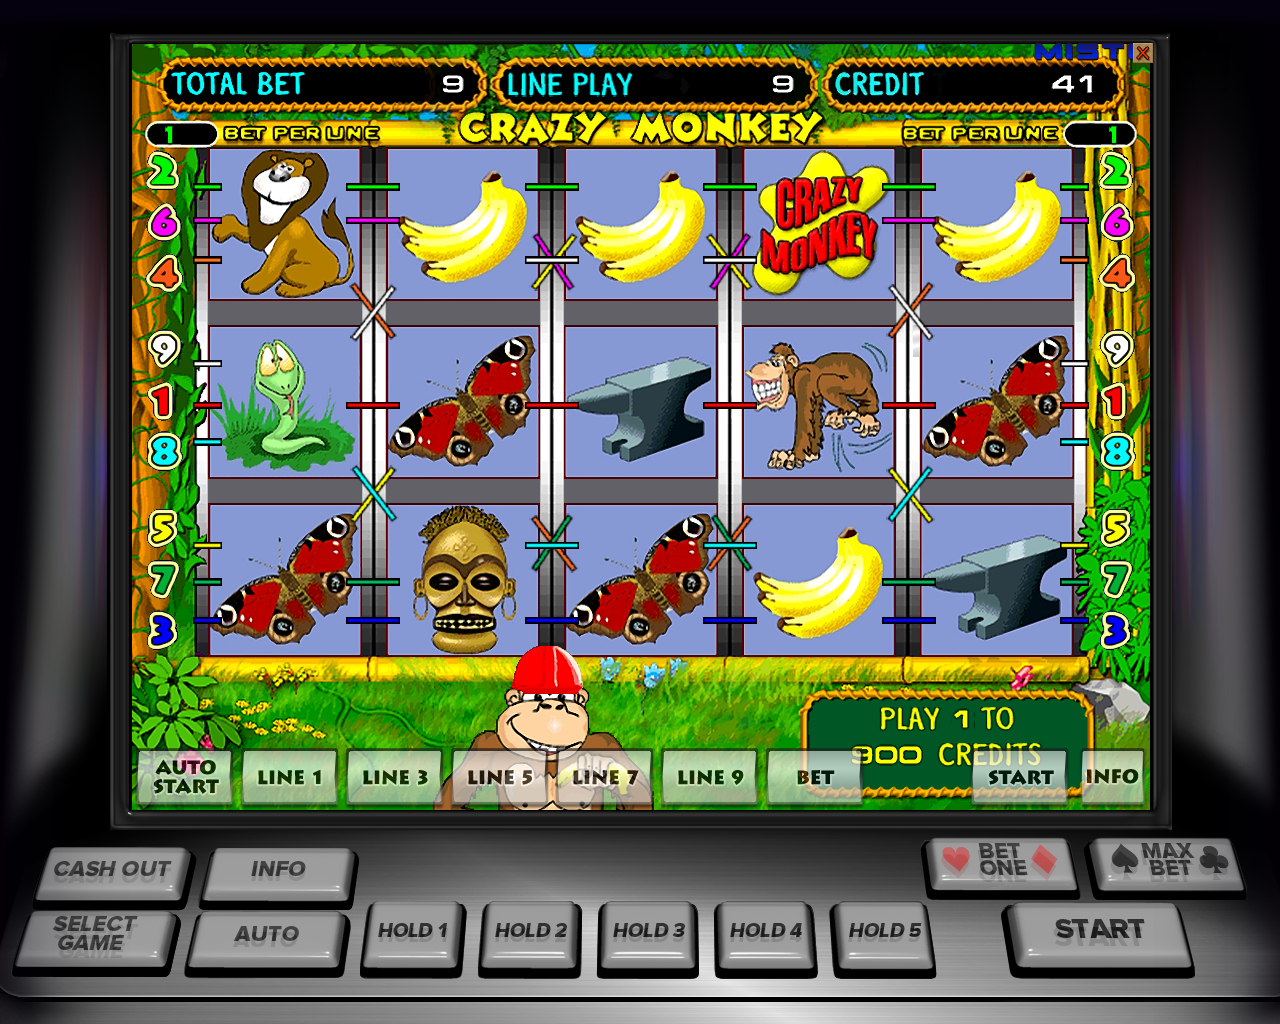 Бесплатные эмуляторы игровых автоматов бесплатно бесплатно казино казино х без регистрации